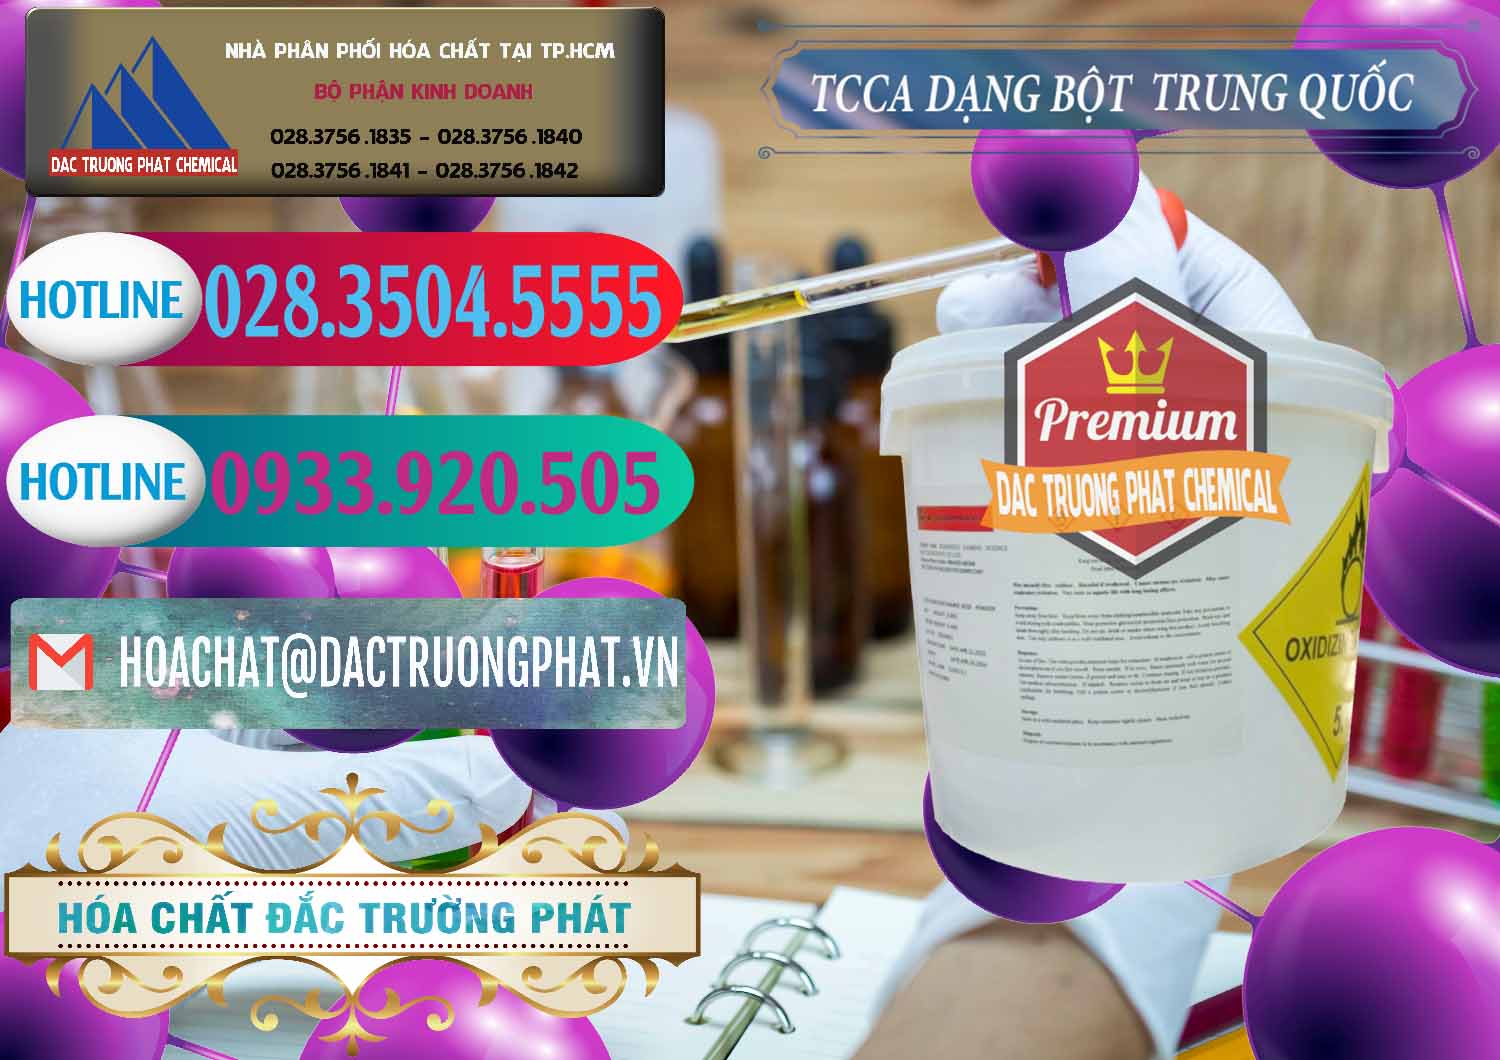 Kinh doanh và bán TCCA - Acid Trichloroisocyanuric Dạng Bột Thùng 5kg Trung Quốc China - 0378 - Công ty chuyên kinh doanh ( phân phối ) hóa chất tại TP.HCM - truongphat.vn